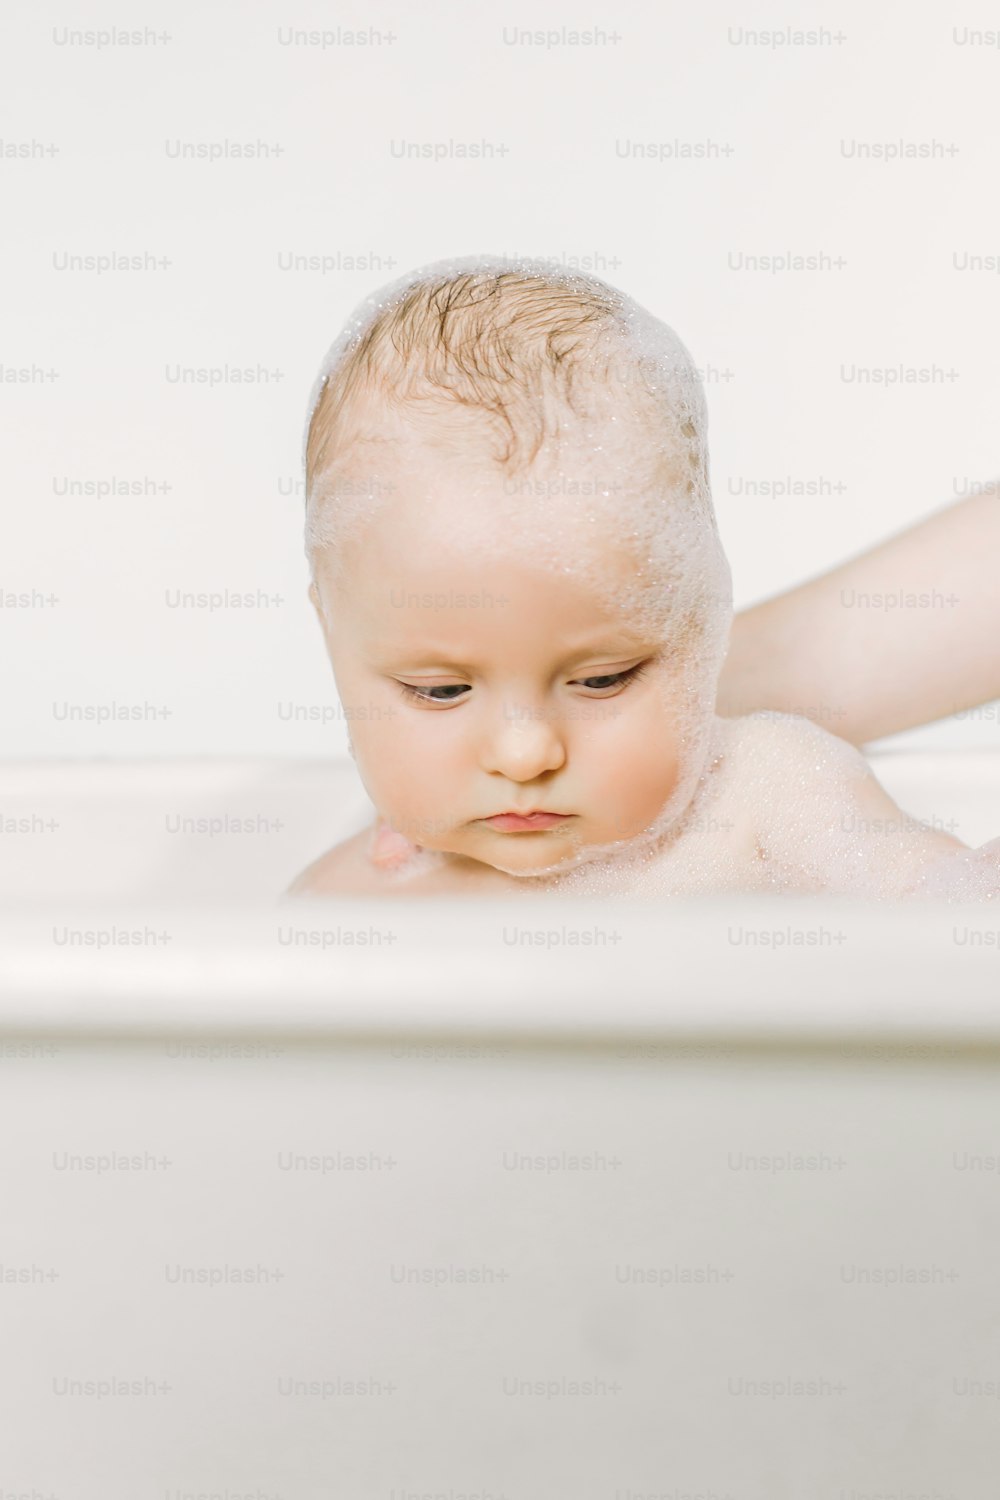 Bambino felice che ride facendo il bagno giocando con le bolle di schiuma. Bambino piccolo in una vasca da bagno. Lavaggio e bagnetto dei neonati. Igiene e cura dei bambini piccoli.